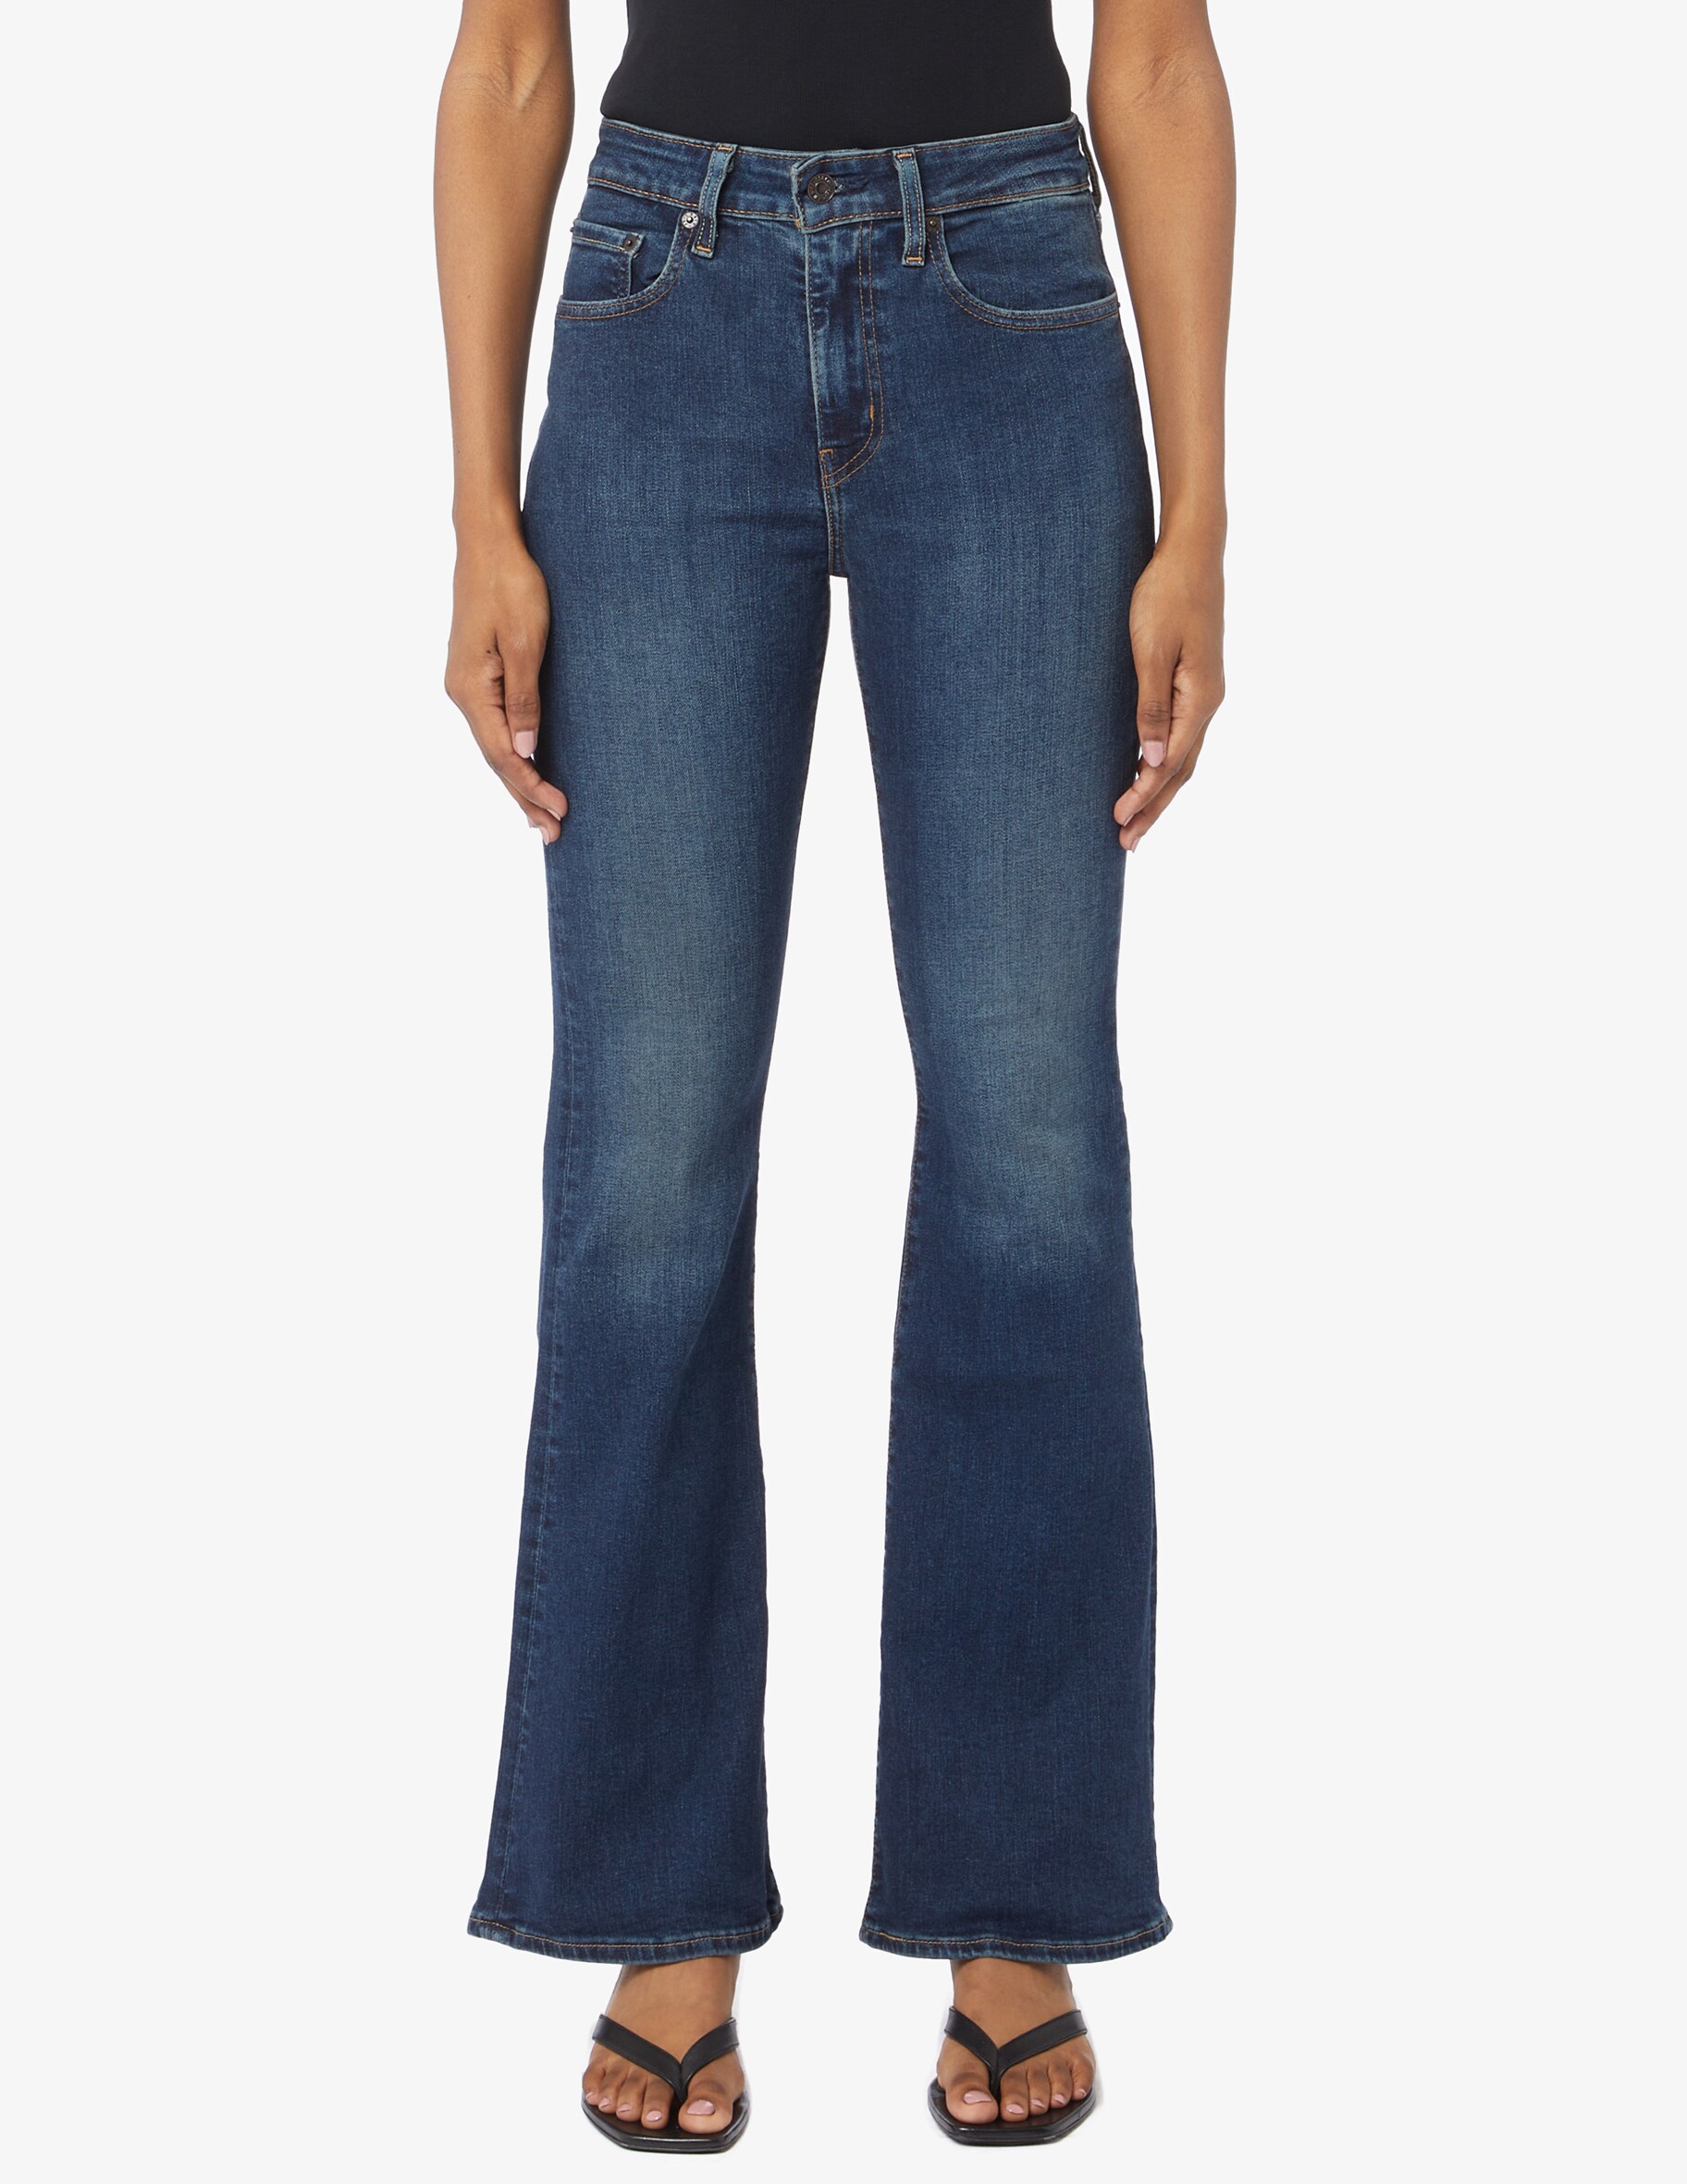 Расклешенные джинсы 726 с высокой посадкой Levi's, синий джинсы расклешенные с высокой посадкой xl синий